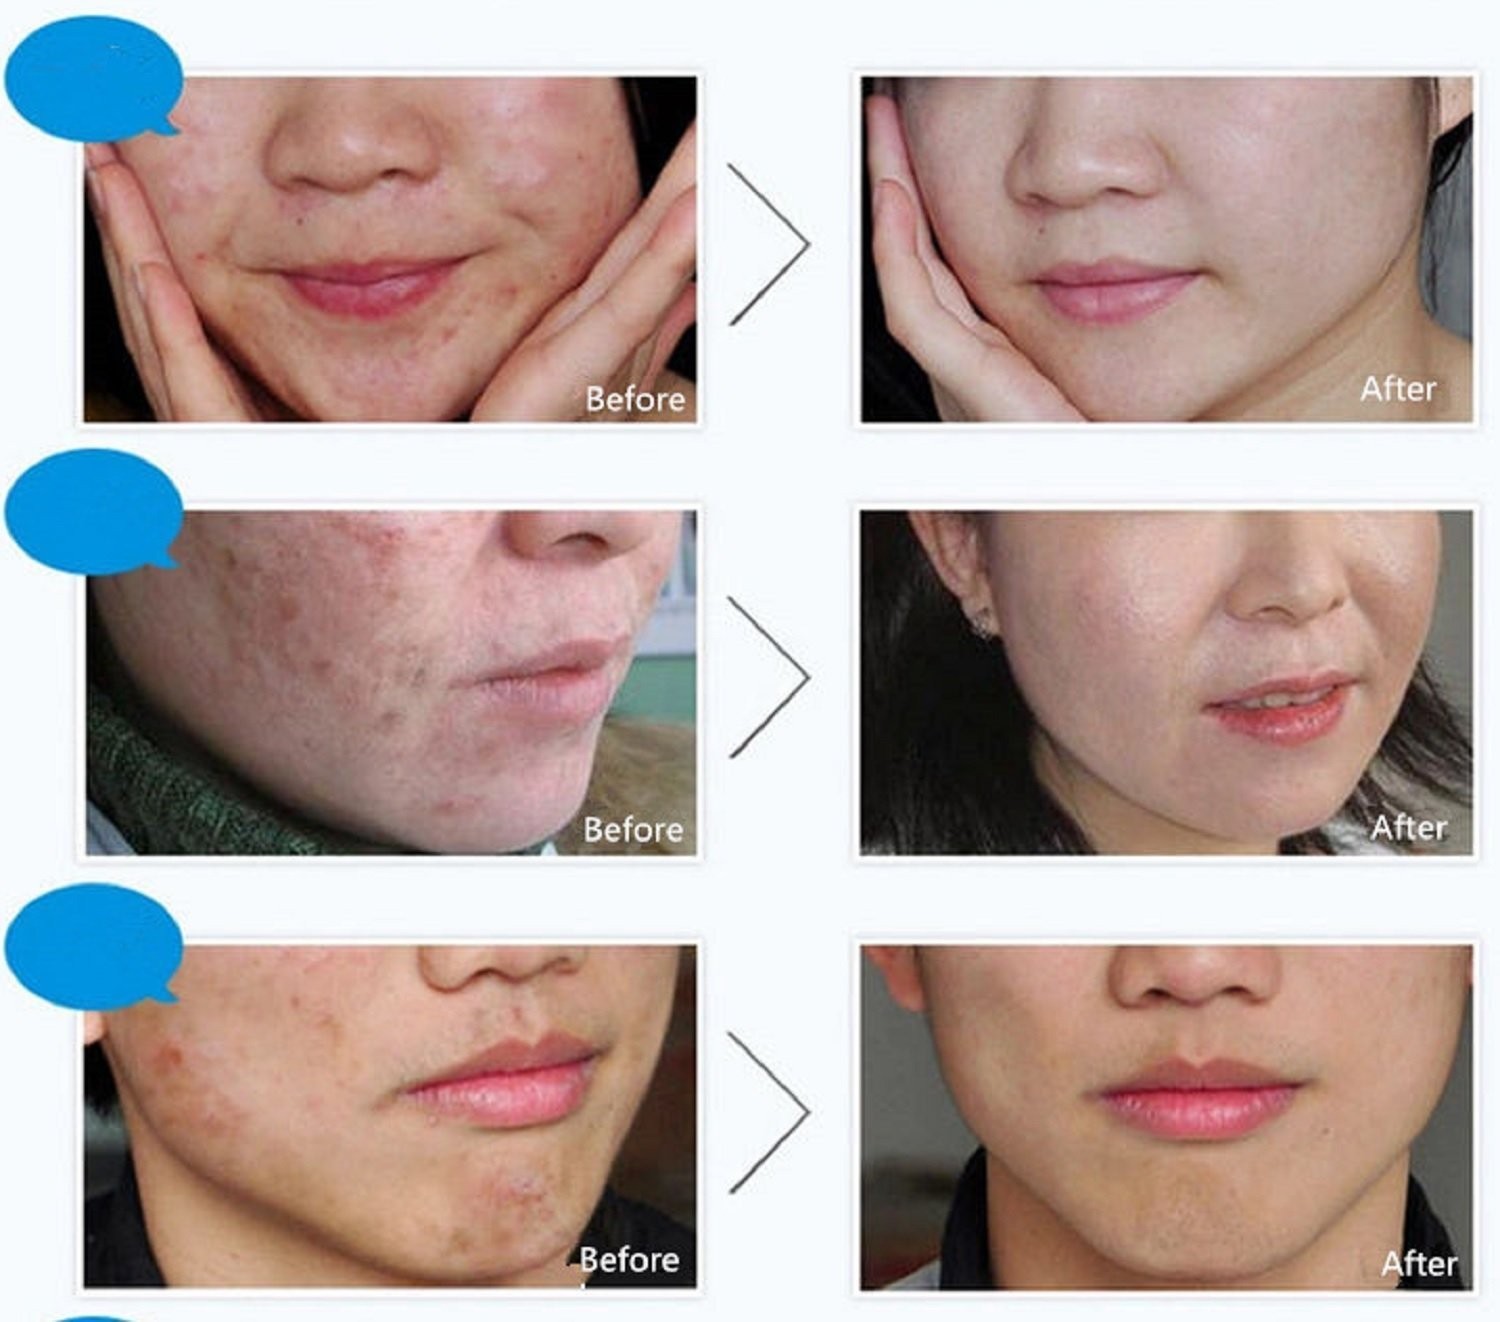 Bioaqua Acne Cream Scars Removal Face Cream